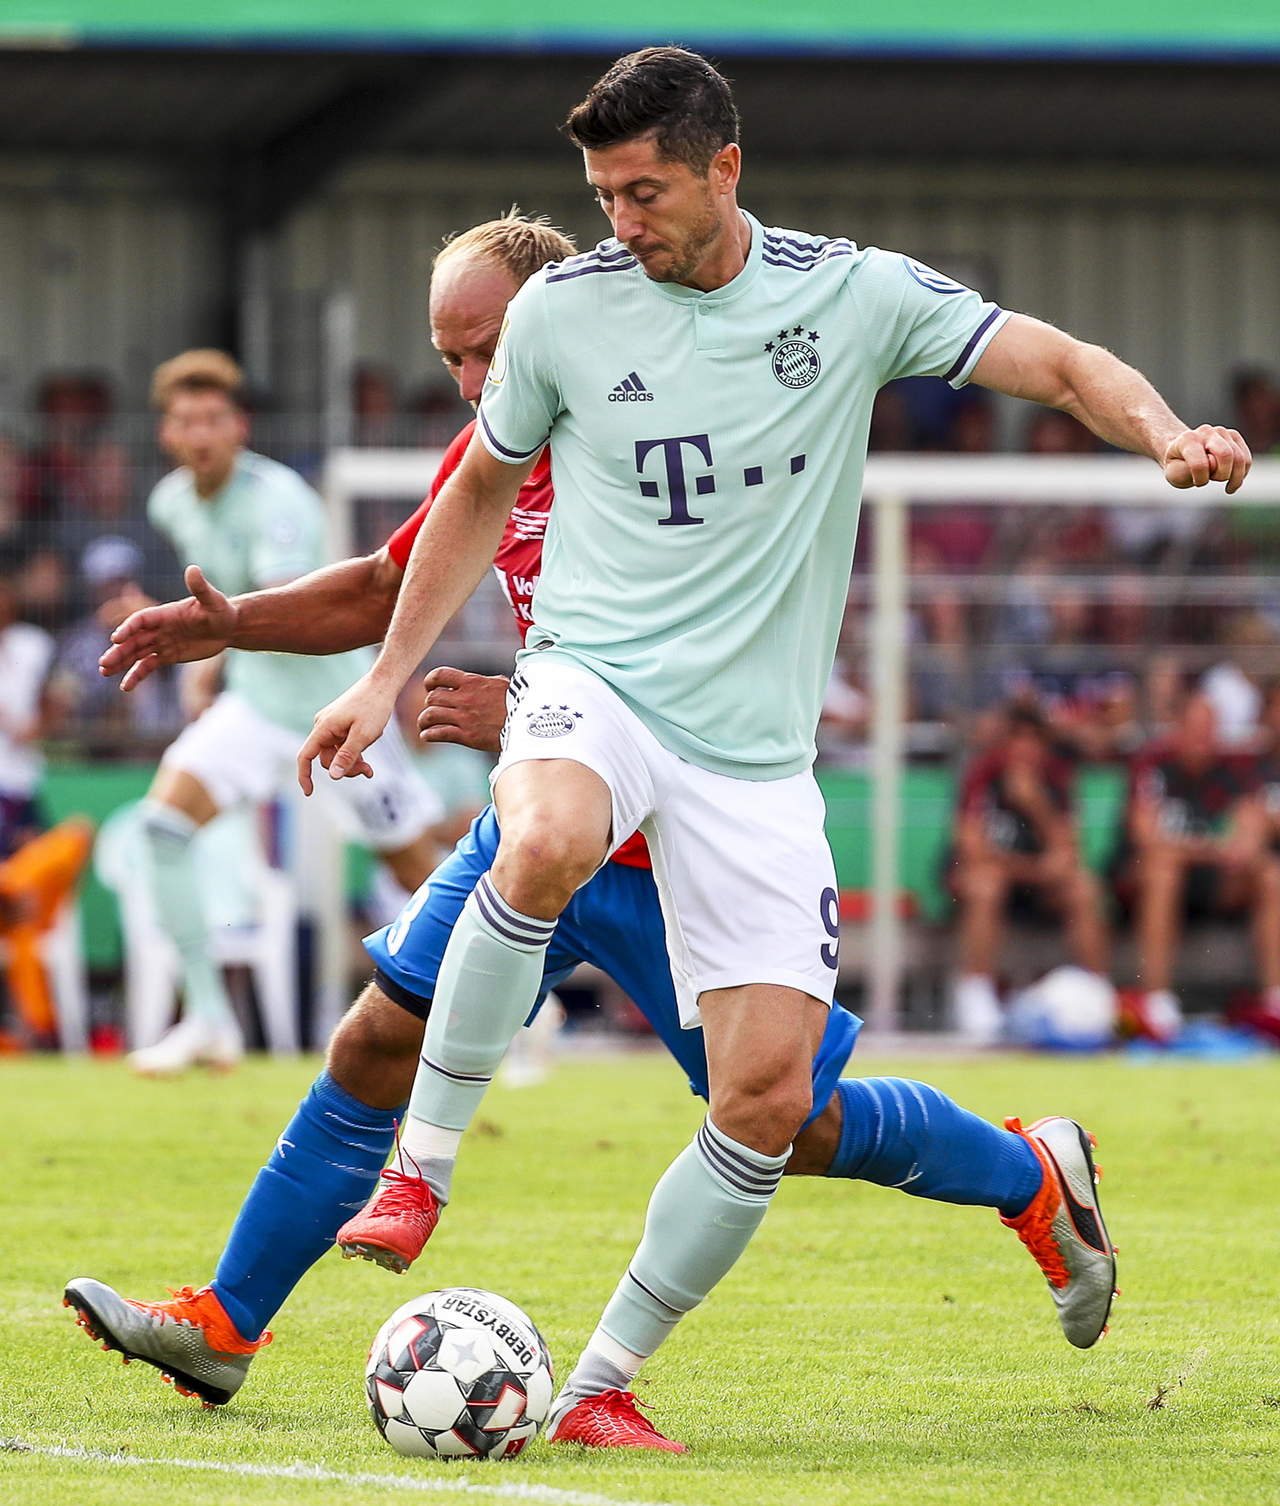 SV Drochtersen/Assel, un equipo de una localidad de apenas 11,000 habitantes en el norte de Alemania, desquició al gigante del fútbol alemán. Pero el gol de Lewandowski a los 81 minutos aseguró la victoria 1-0 para los campeones de la Bundesliga. (EFE)